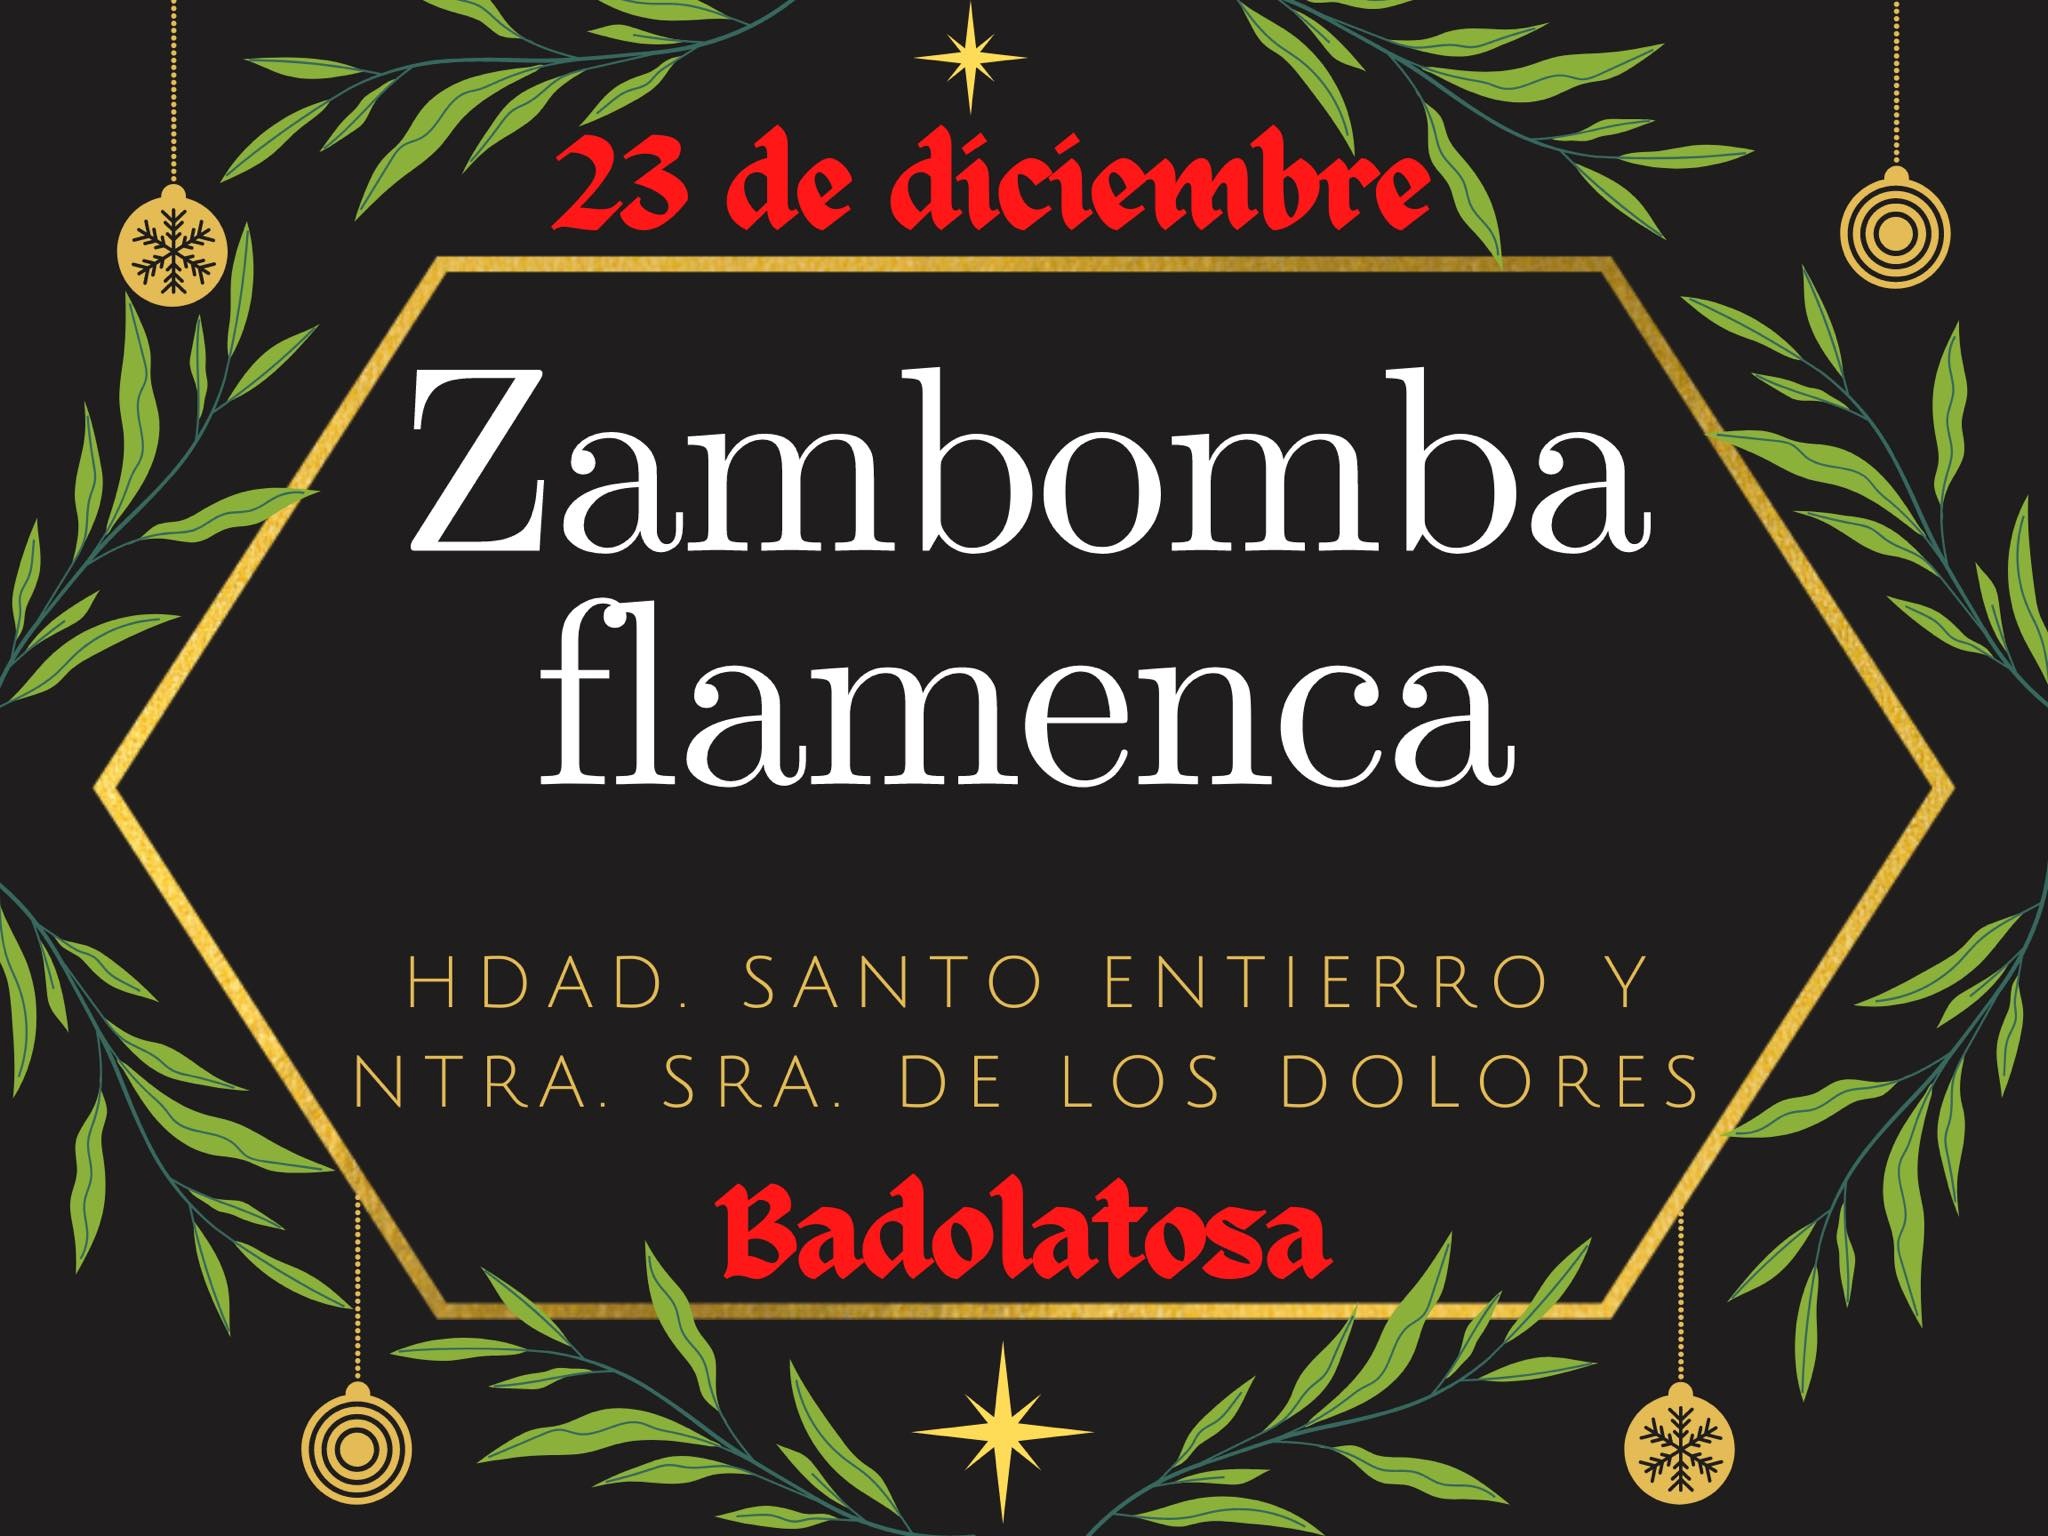 ZAMBOMBA FLAMENCA HDAD STO ENTIERRO Y VIRGEN DE LOS DOLORES